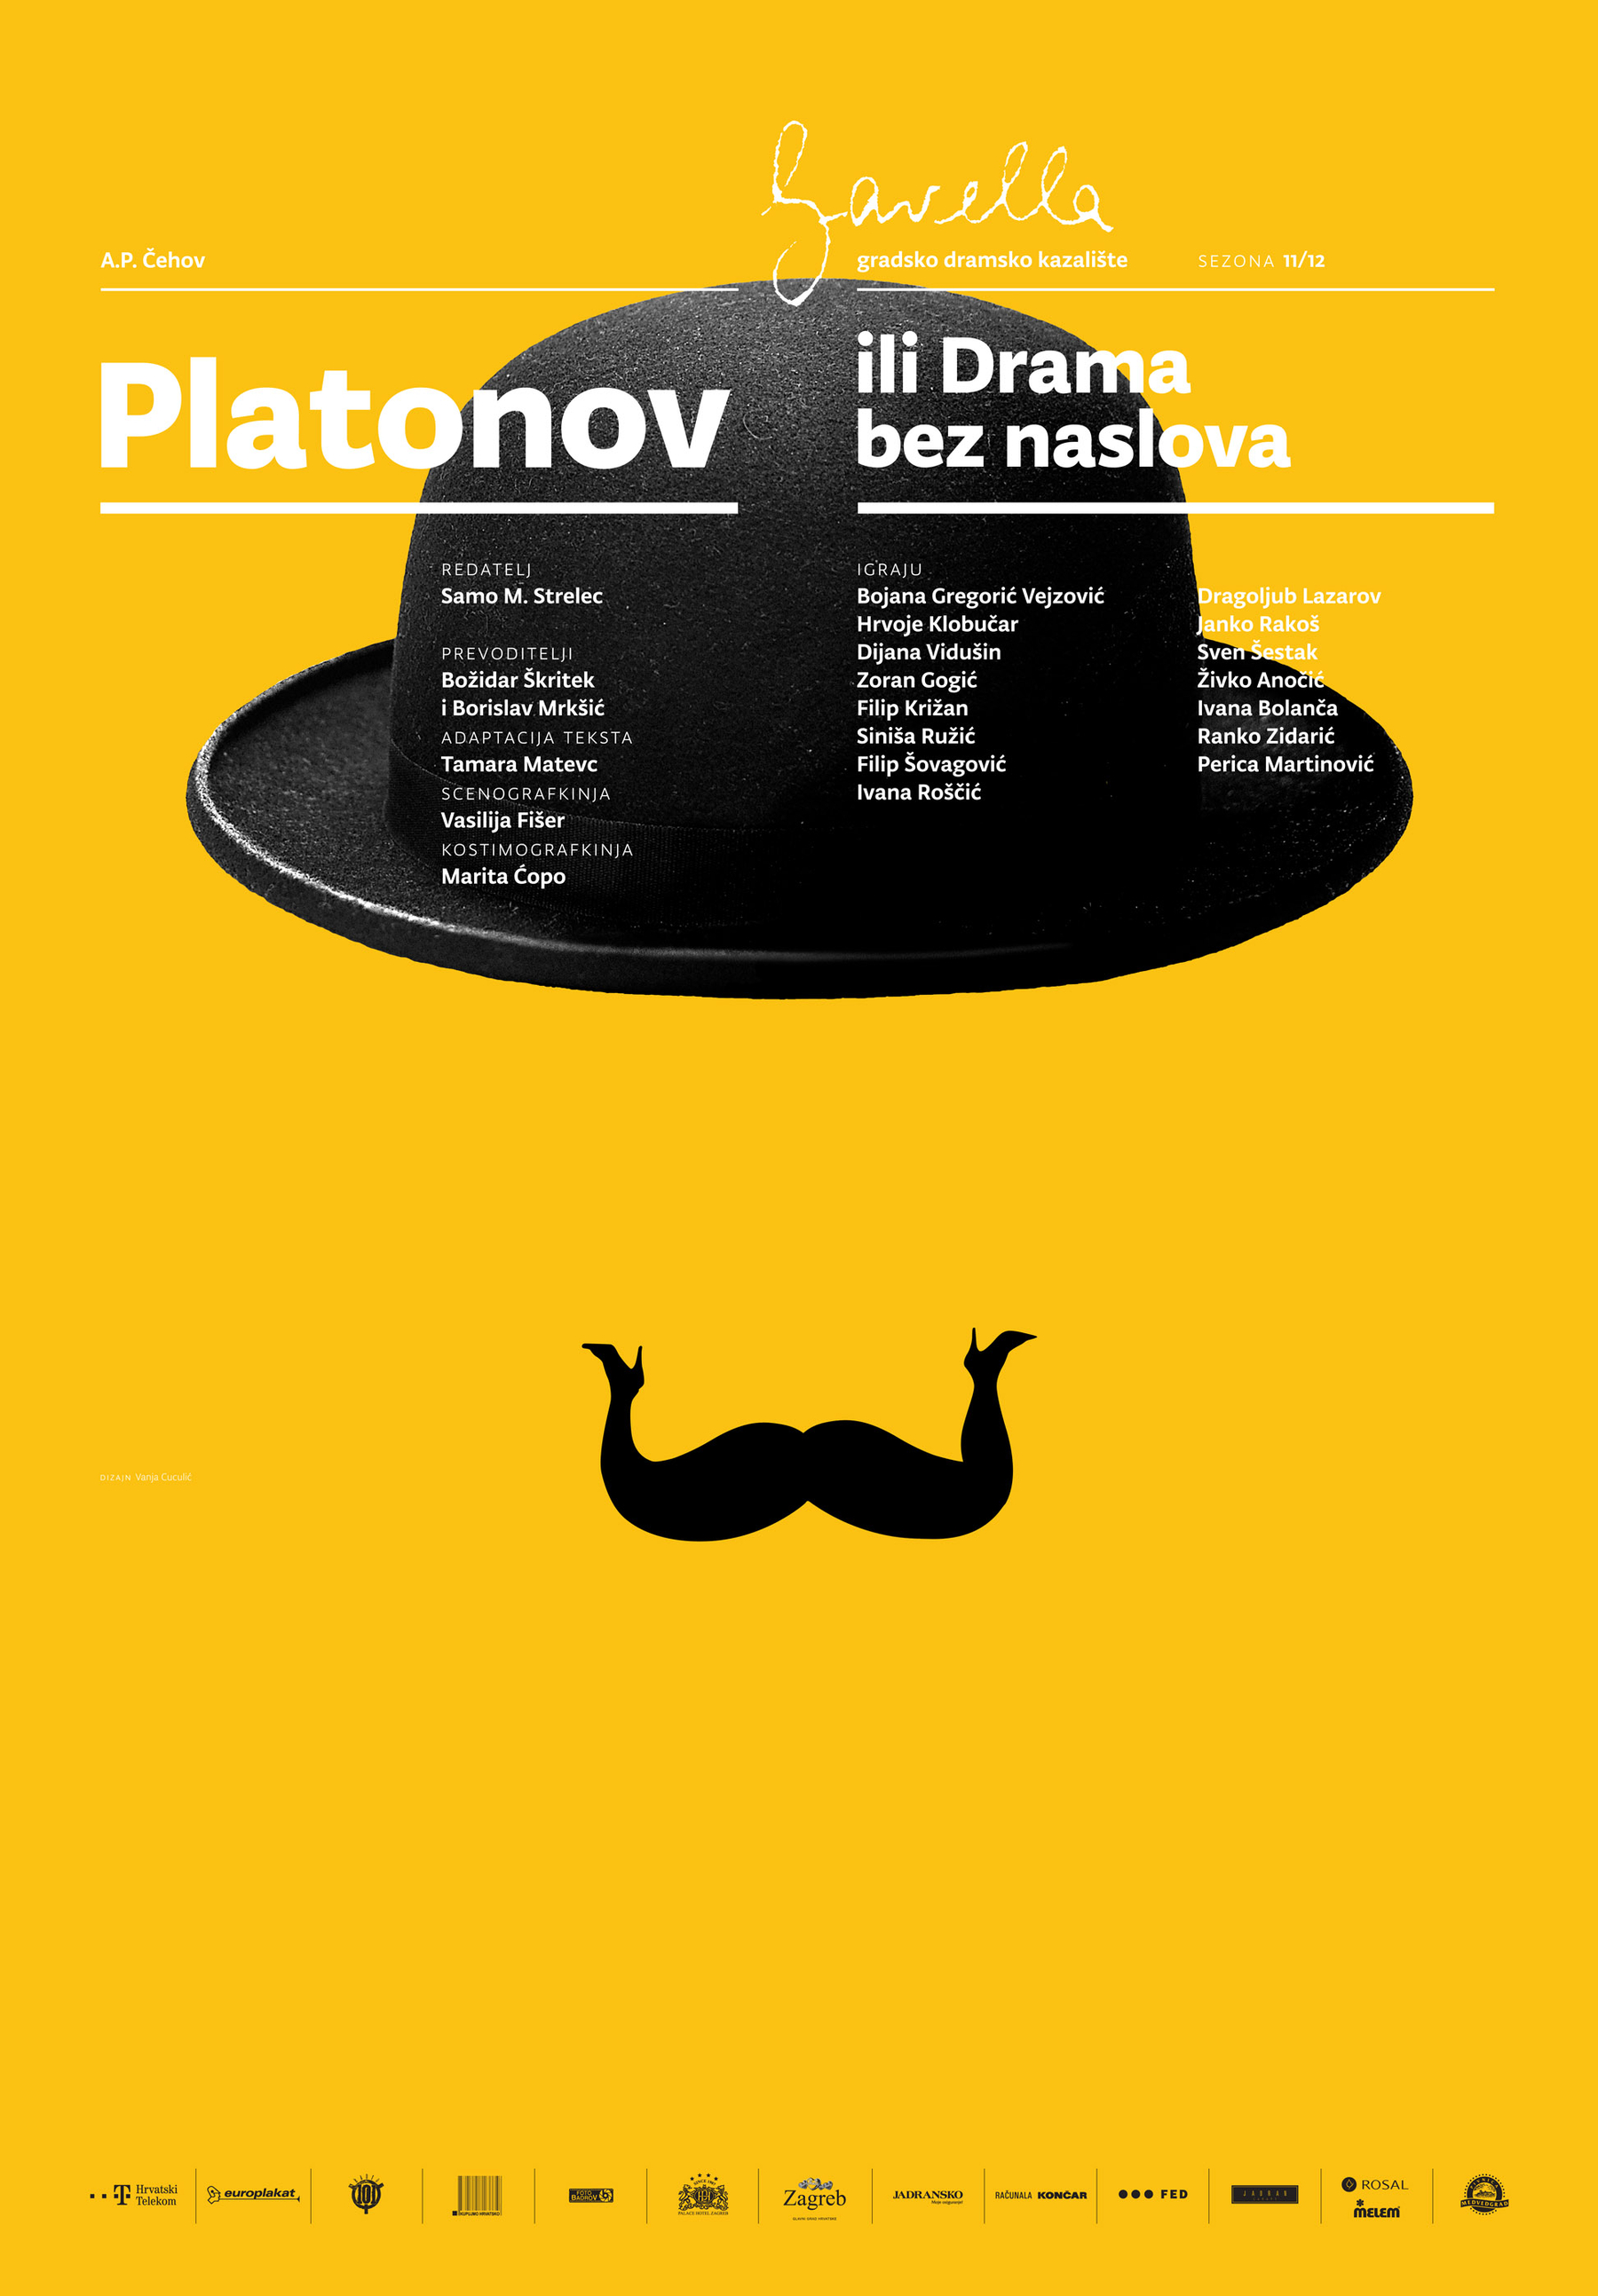 Premijera predstave "Platonov ili Drama bez naslova" A. P. Čehova